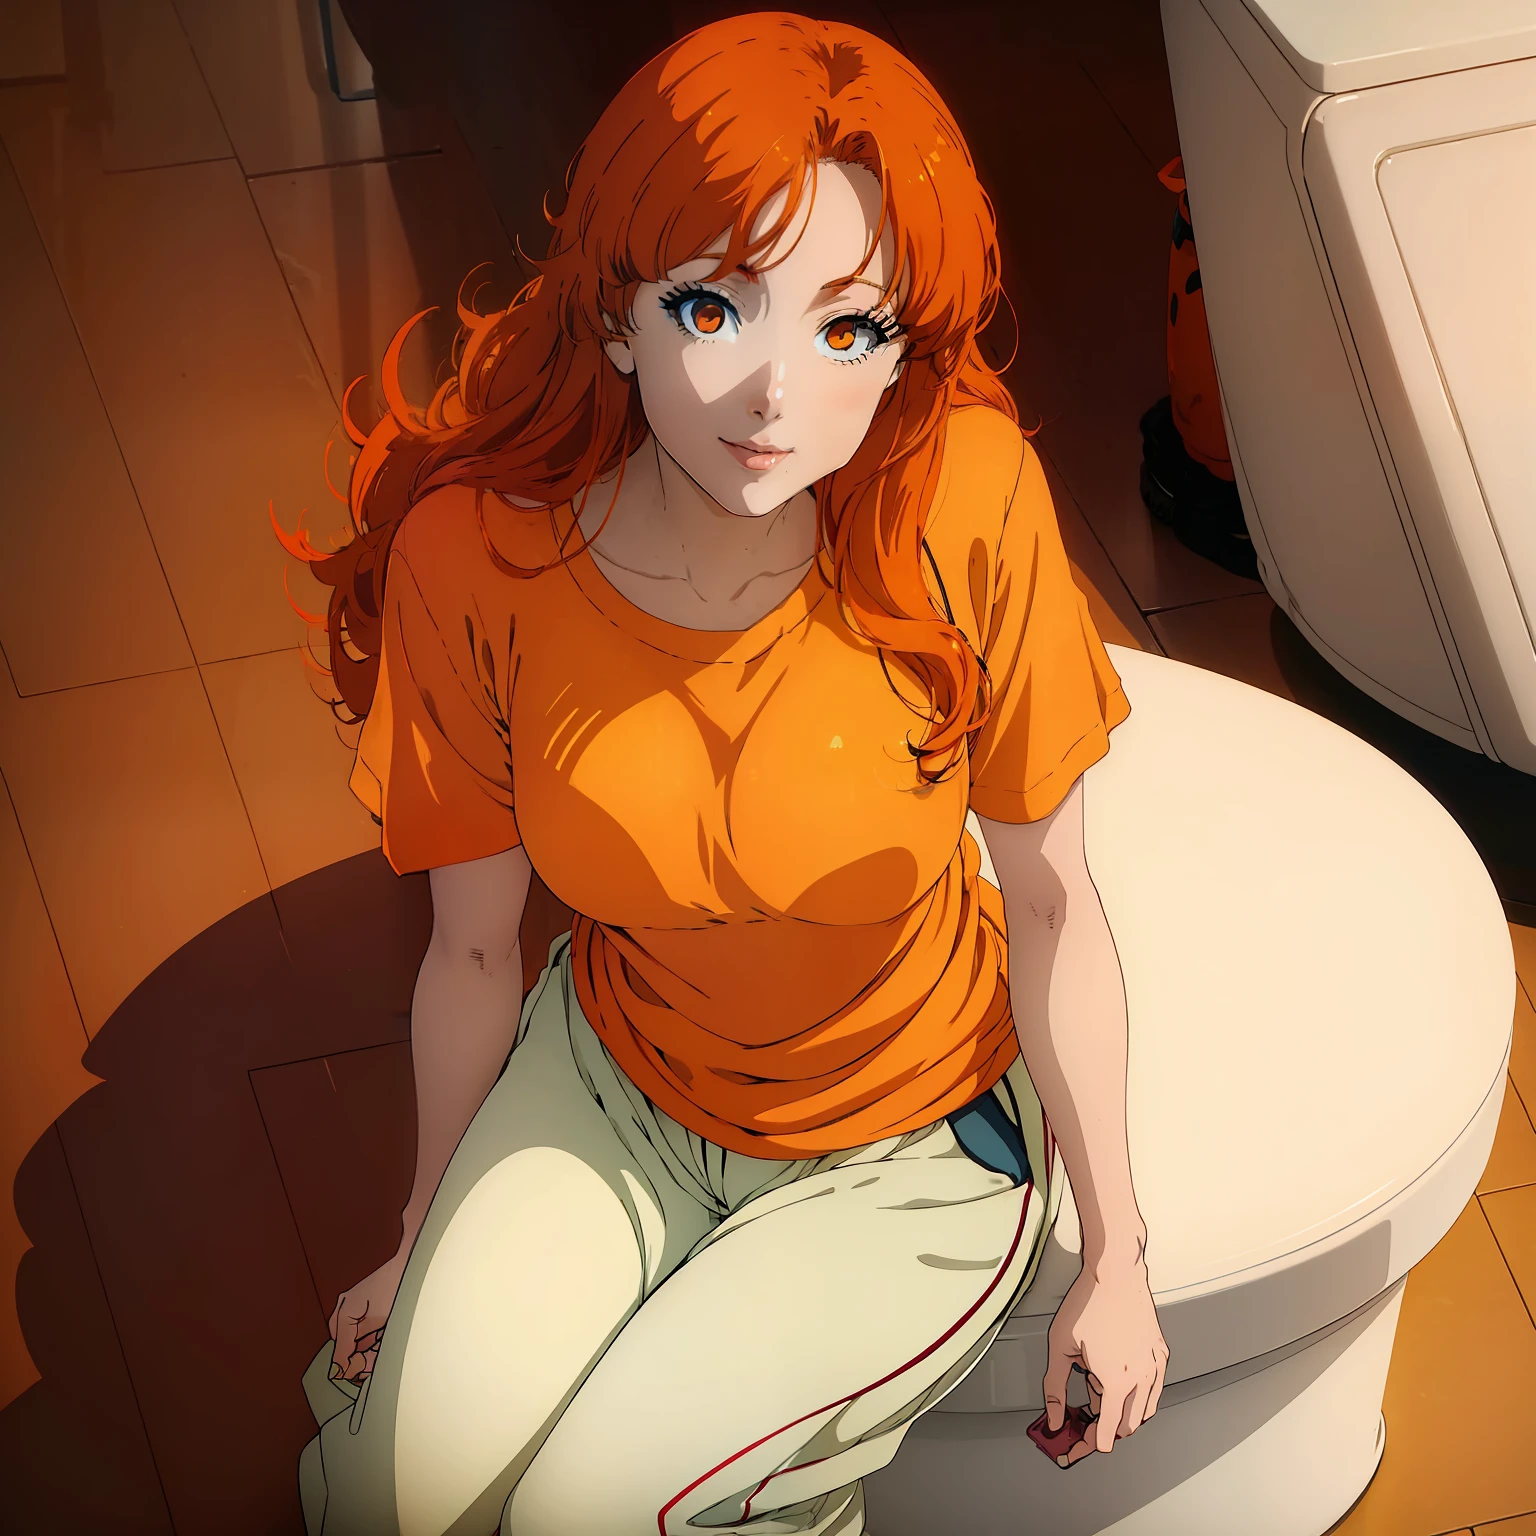 (((Anime-Serie))), ((((Frau)))), direkt aus dem echten Leben, mit (Haar_orange) orange Haar, Makeover auf einer Toilette tragen (Hemd_orange) orange Hemd and long pants, lächeln"